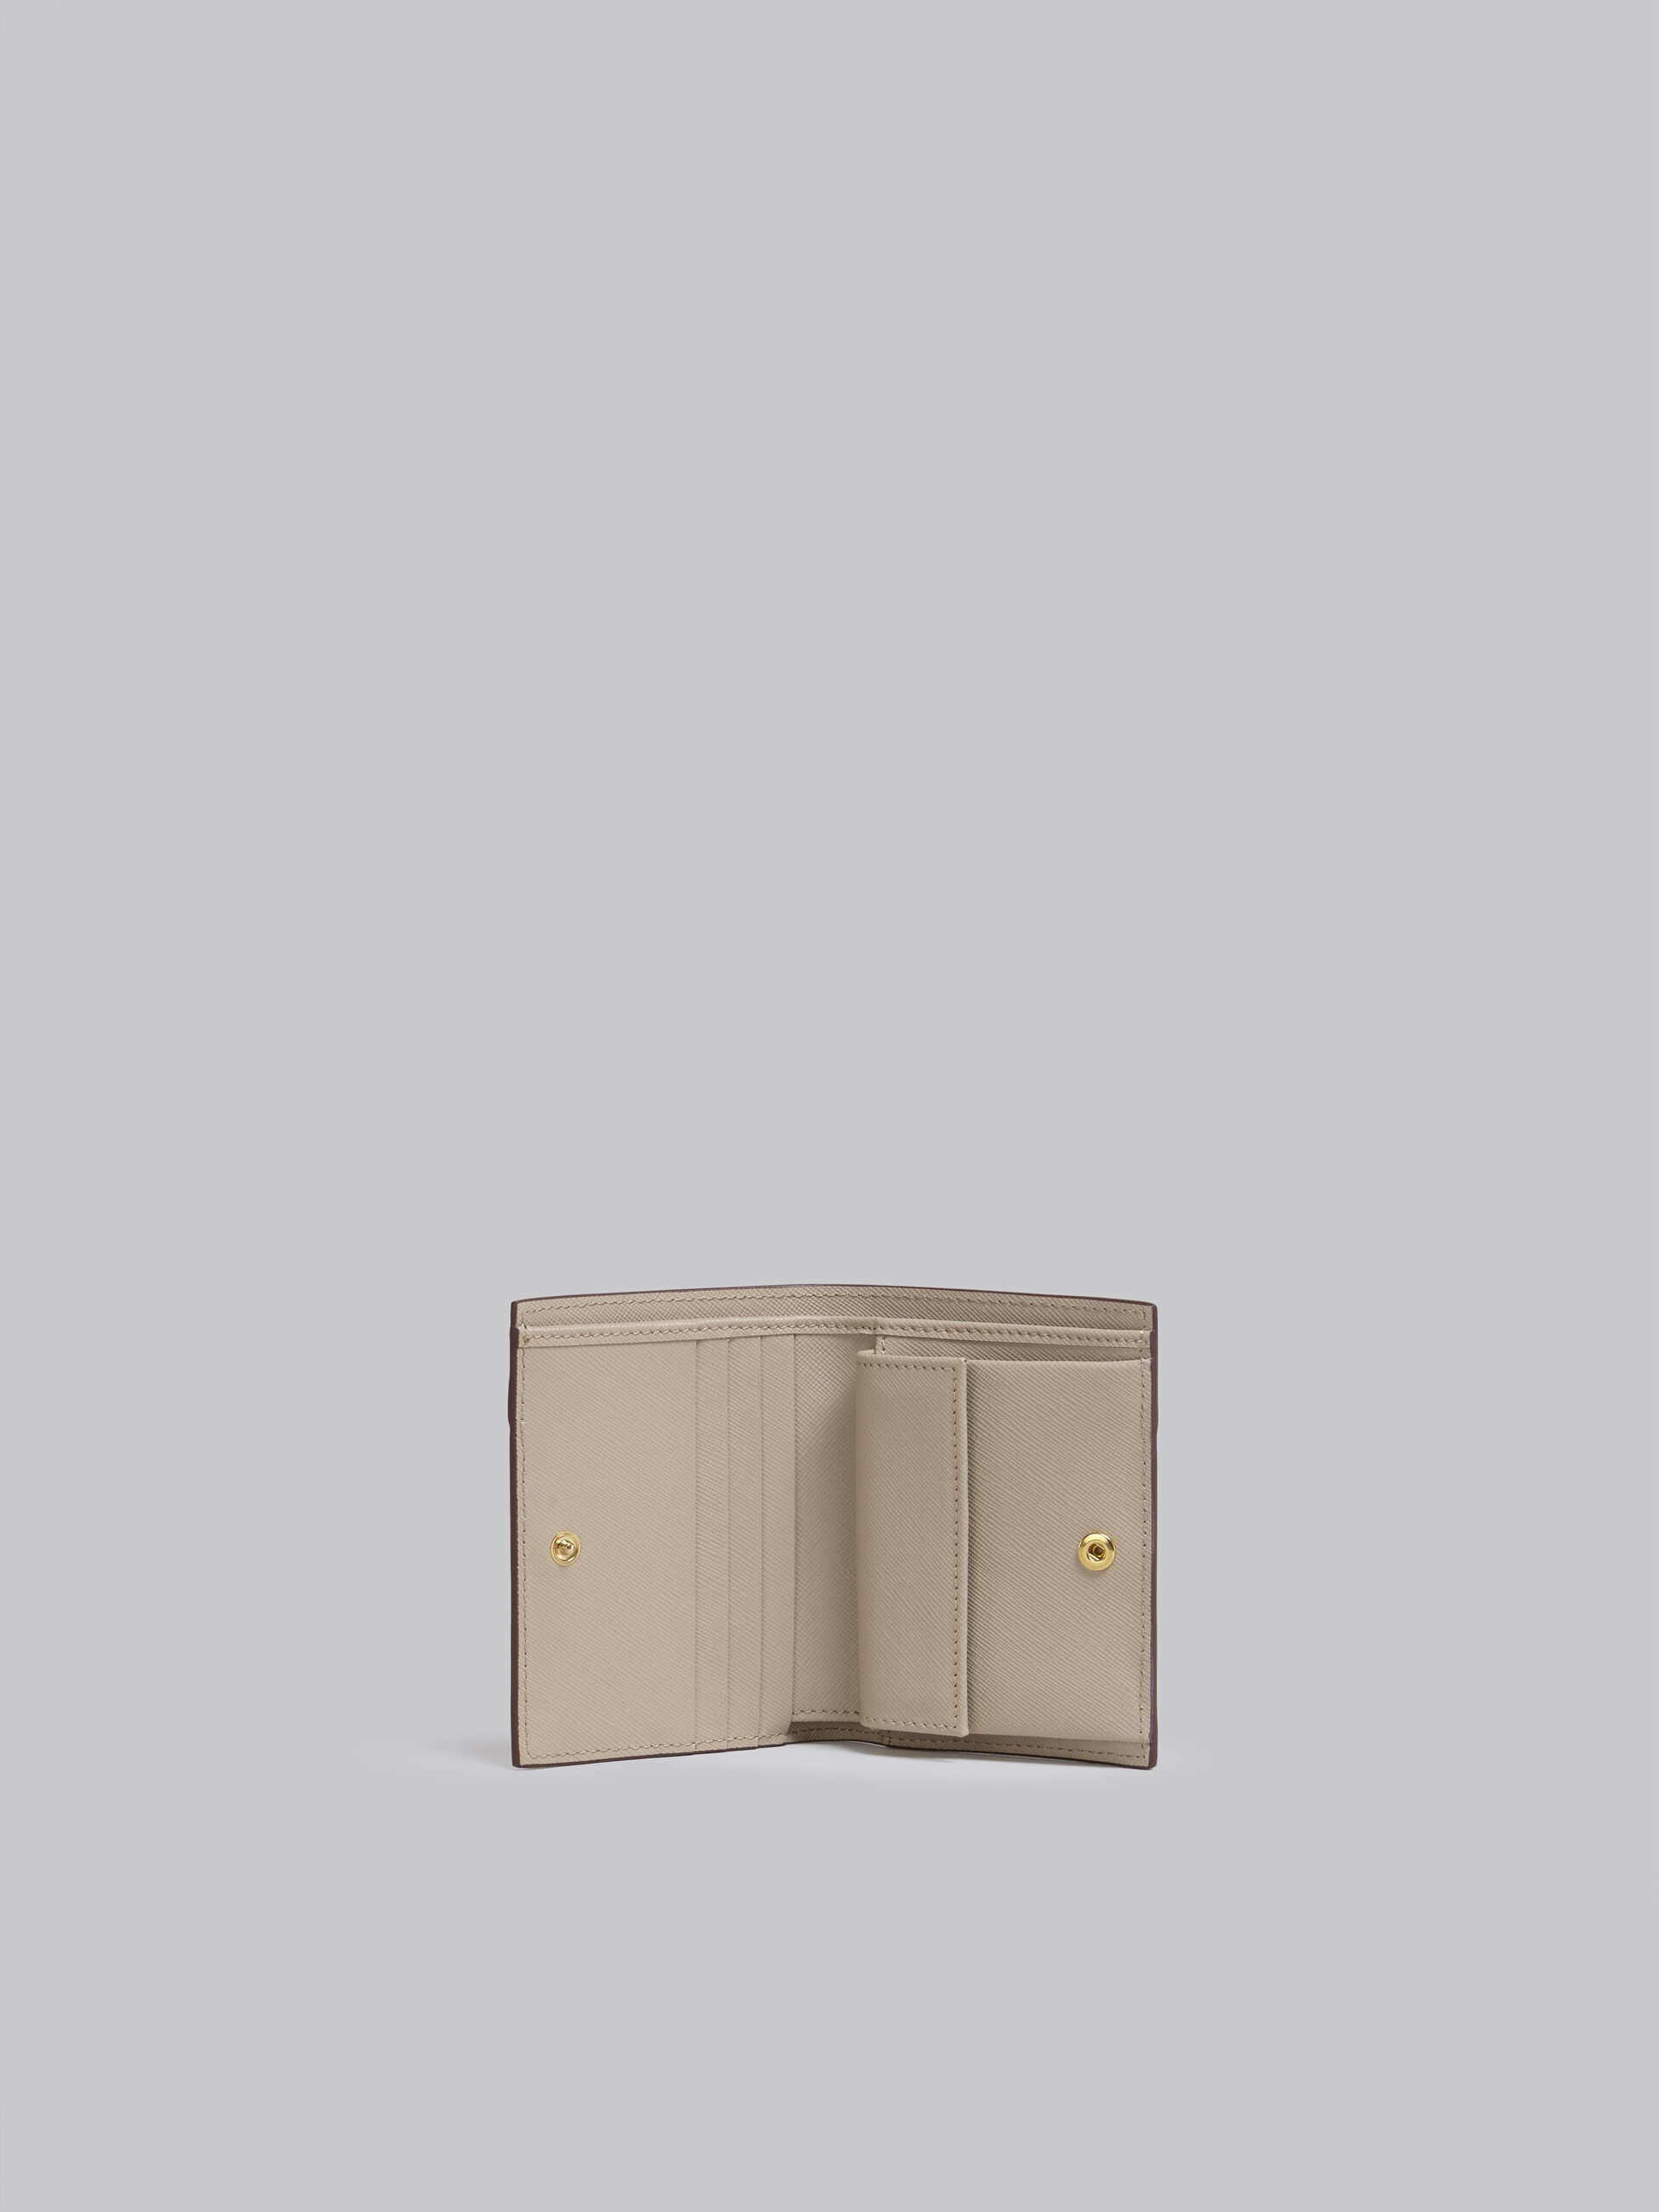 Beige saffiano leather bi-fold wallet - Wallets - Image 2